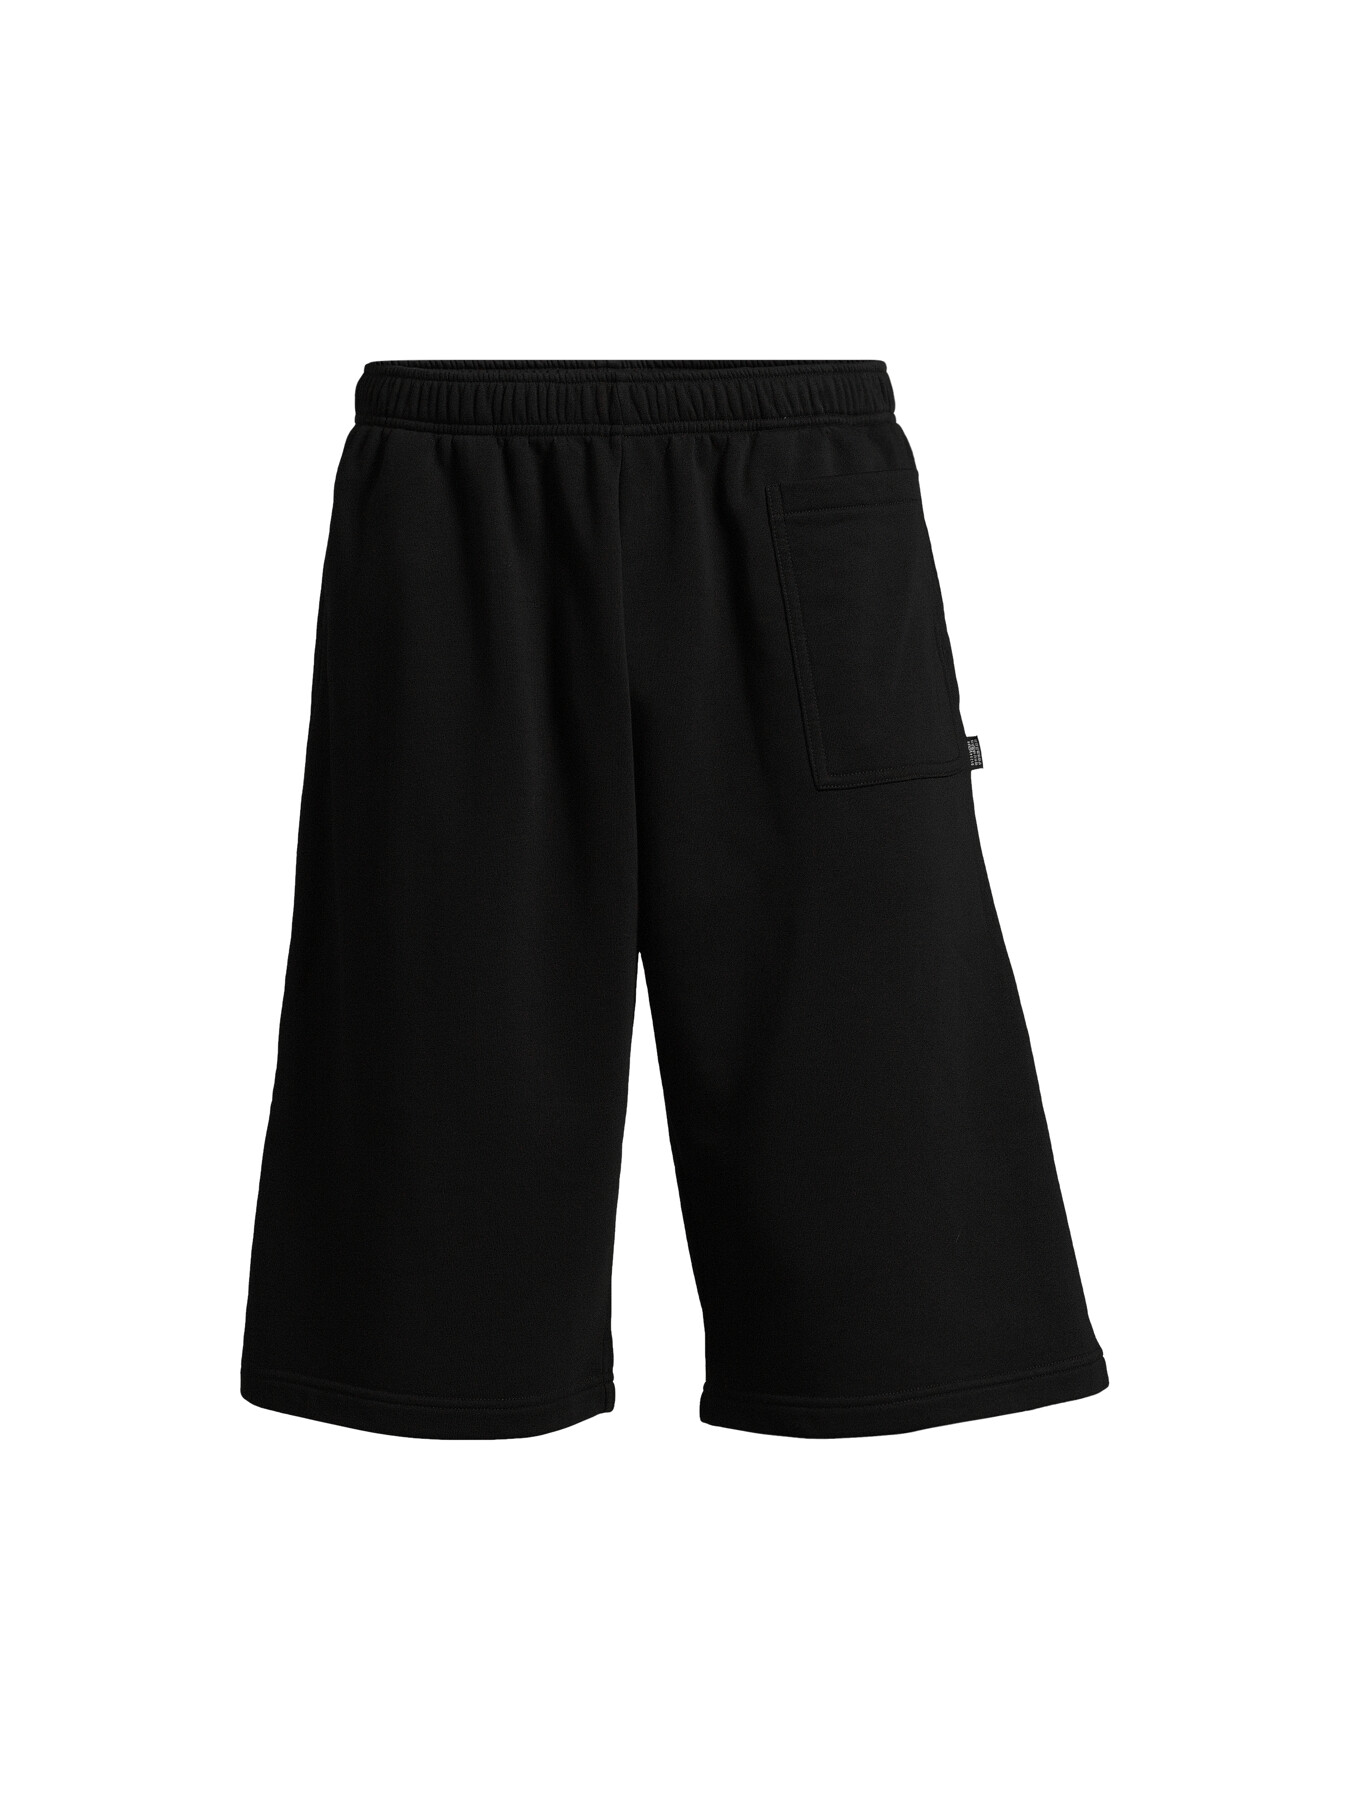 Mm6 Maison Margiela Men's Unbrushed Jersey Shorts Black